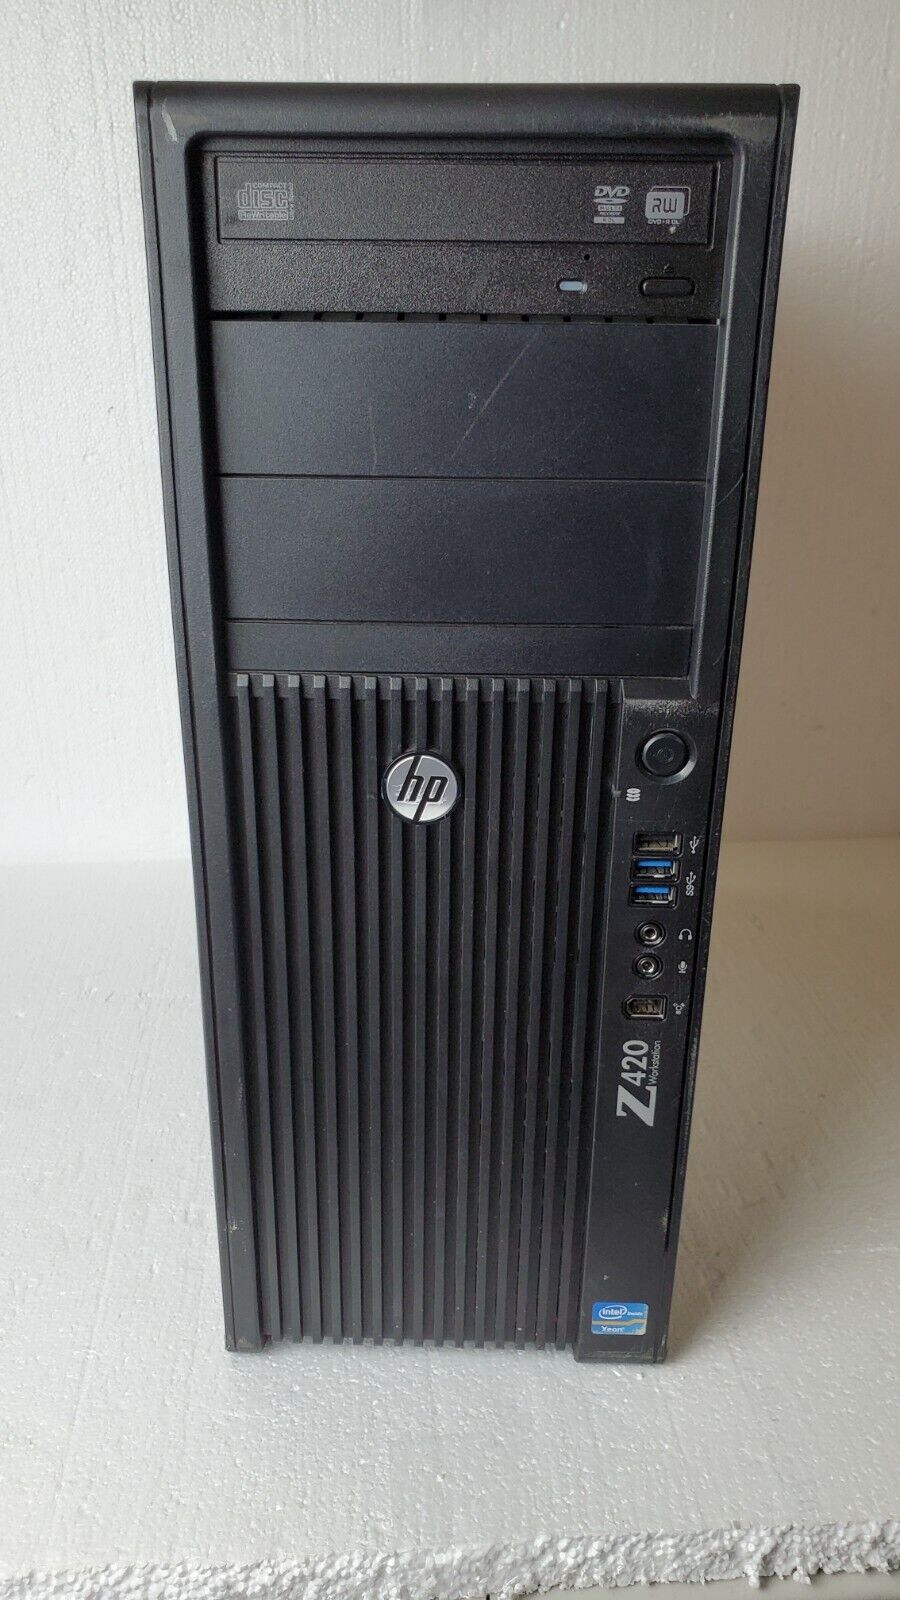 HP Z420 Workstation 2.80GHz E5-1603 8GB RAM 1TB SATA HARD DRIVE TOWER COA#8